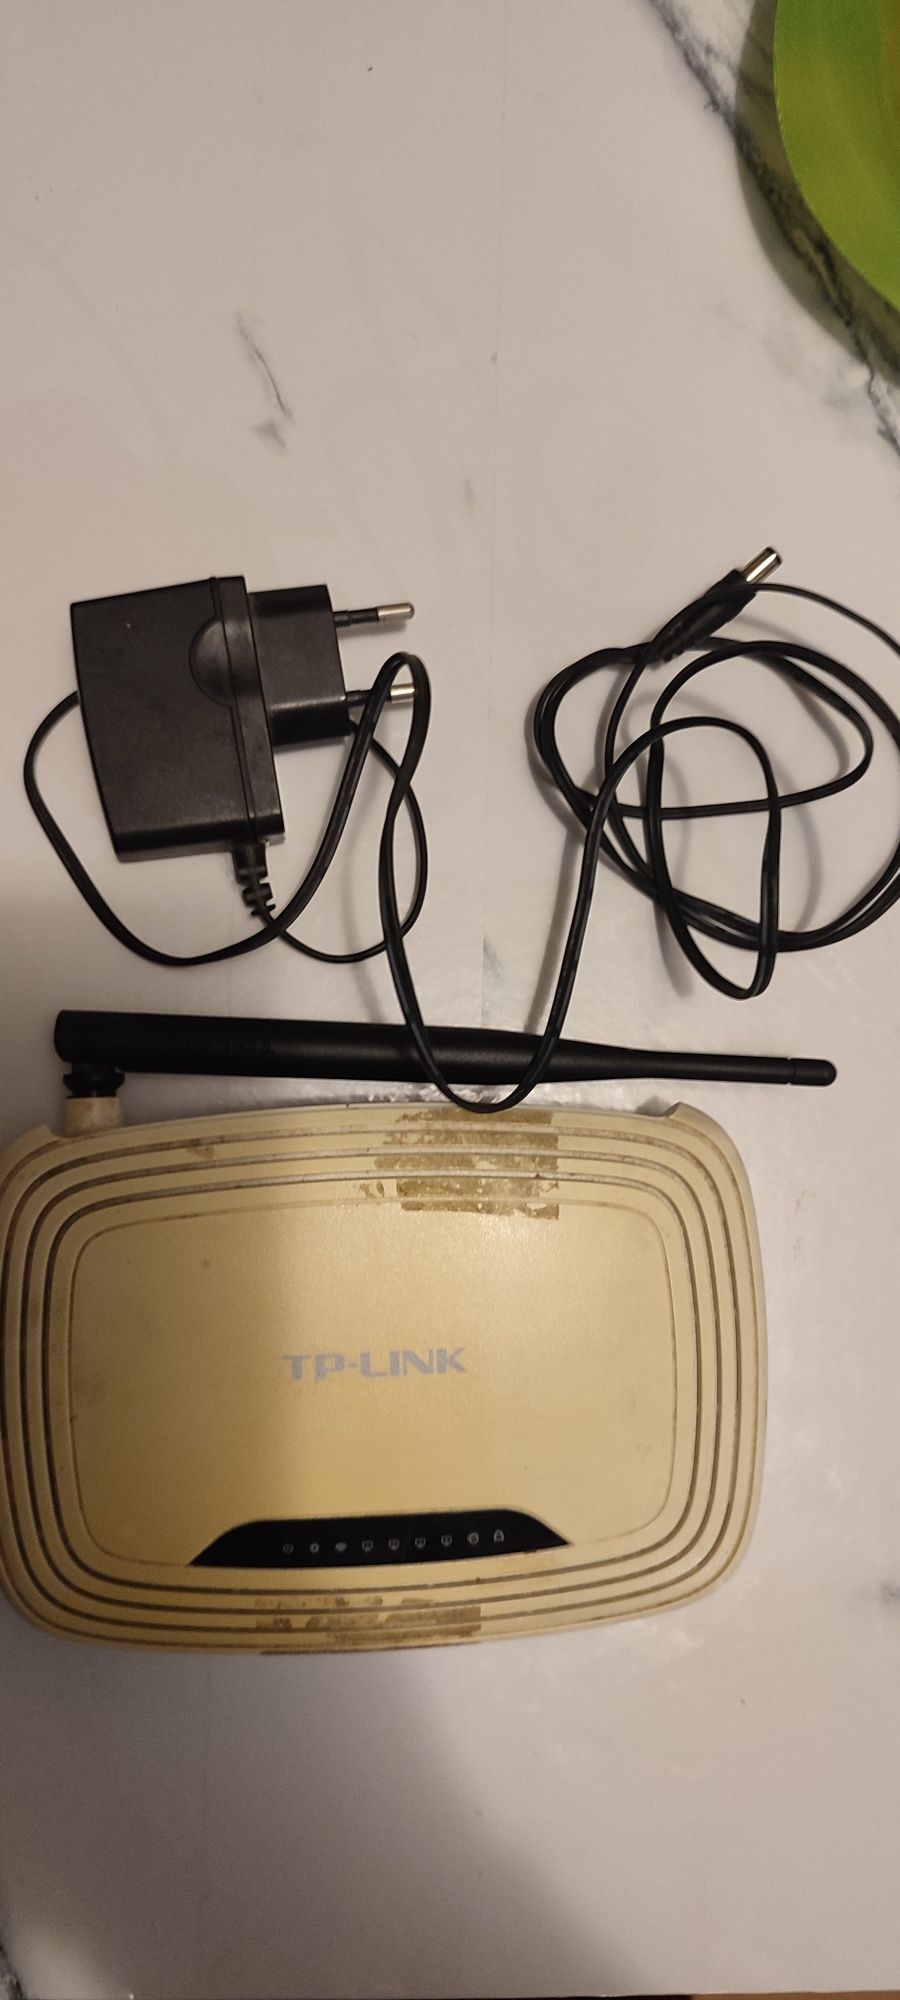 Бездротовий маршрутизатор ( роутер ) TP-Link TL-WR740N